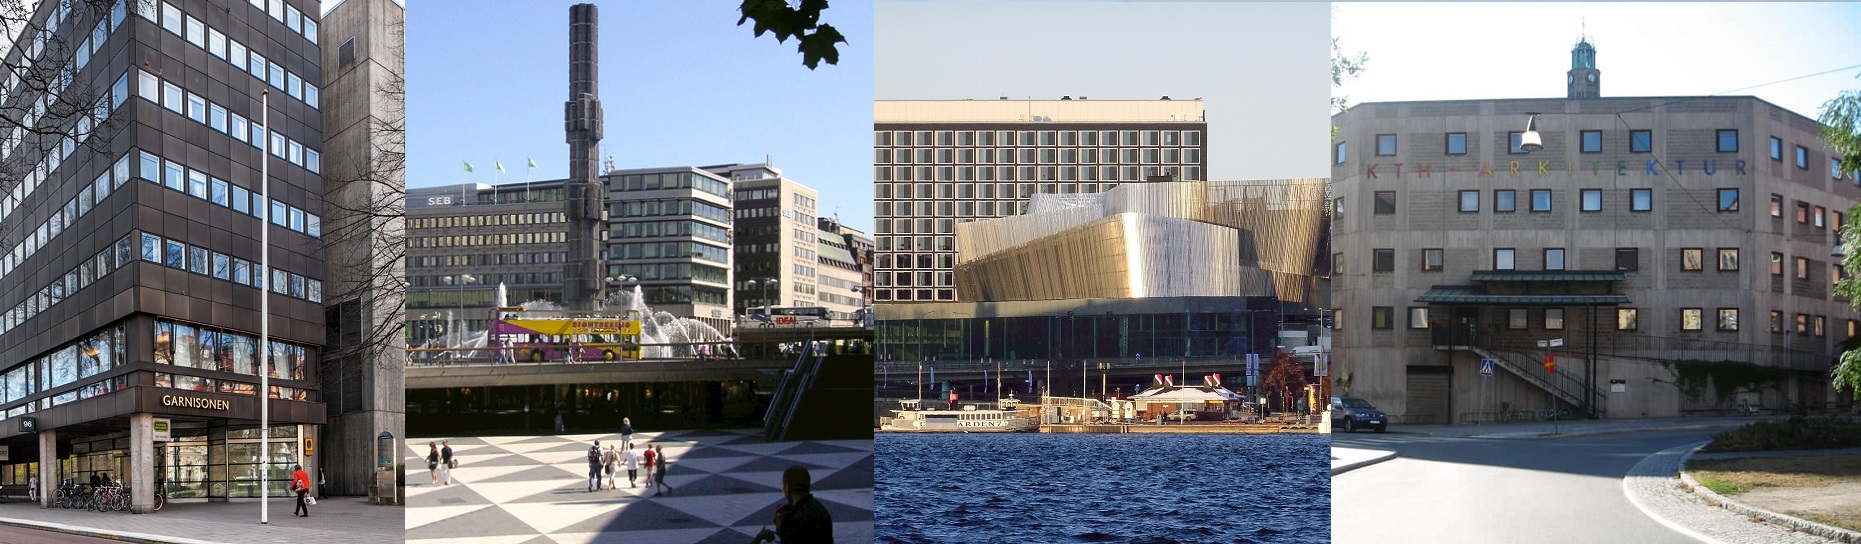 Finns Sveriges fulaste byggnad i Stockholm?